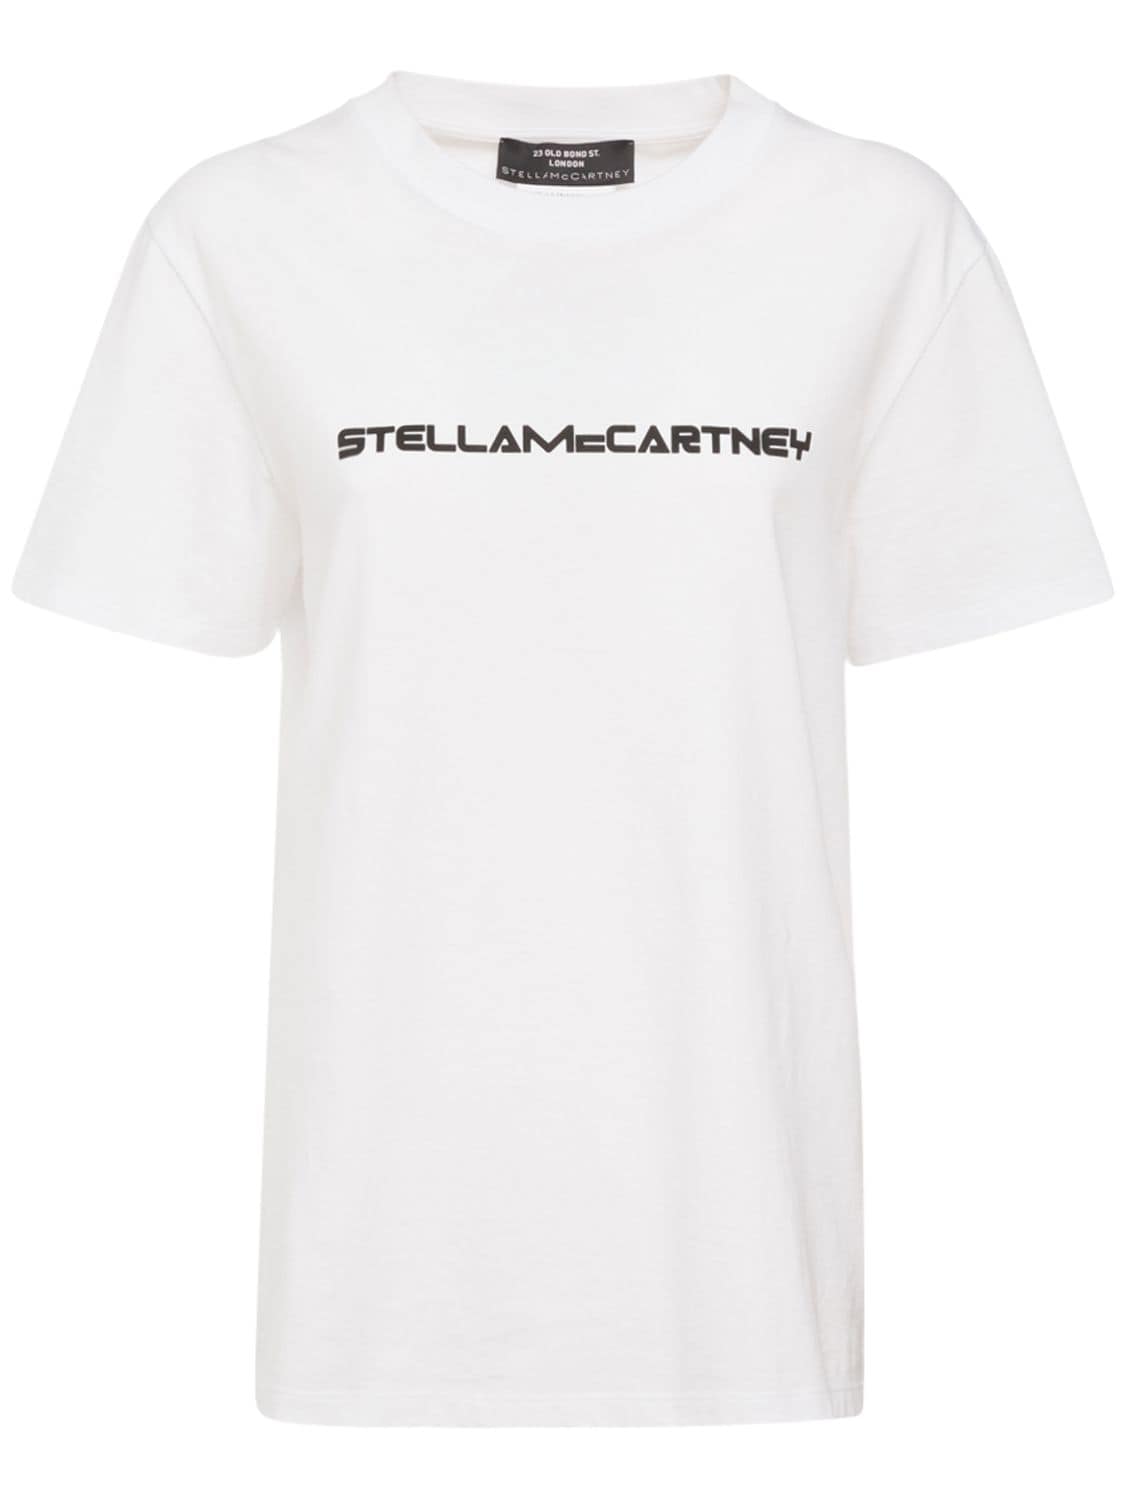 新製品情報も満載 ロゴTシャツ McCartney Stella - Tシャツ/カットソー 